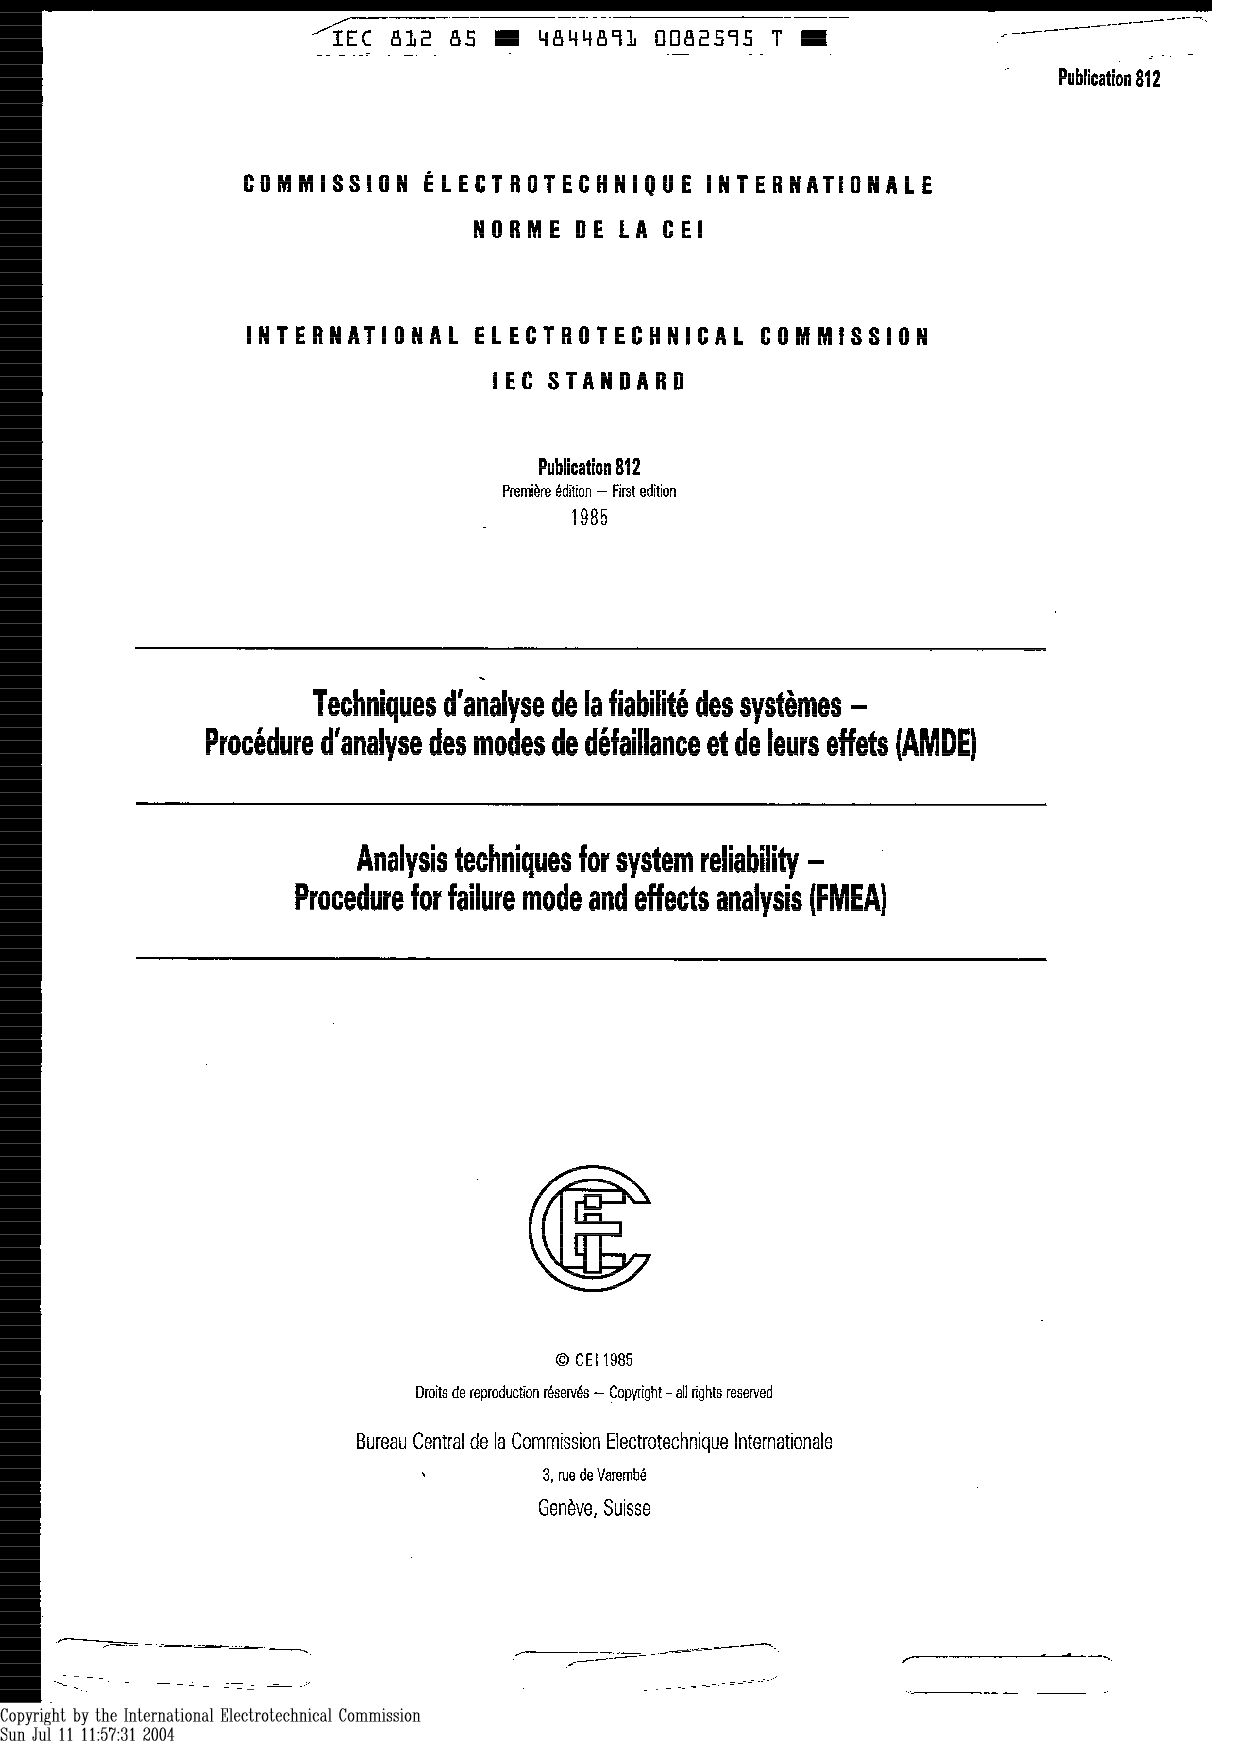 IEC 60812-1985